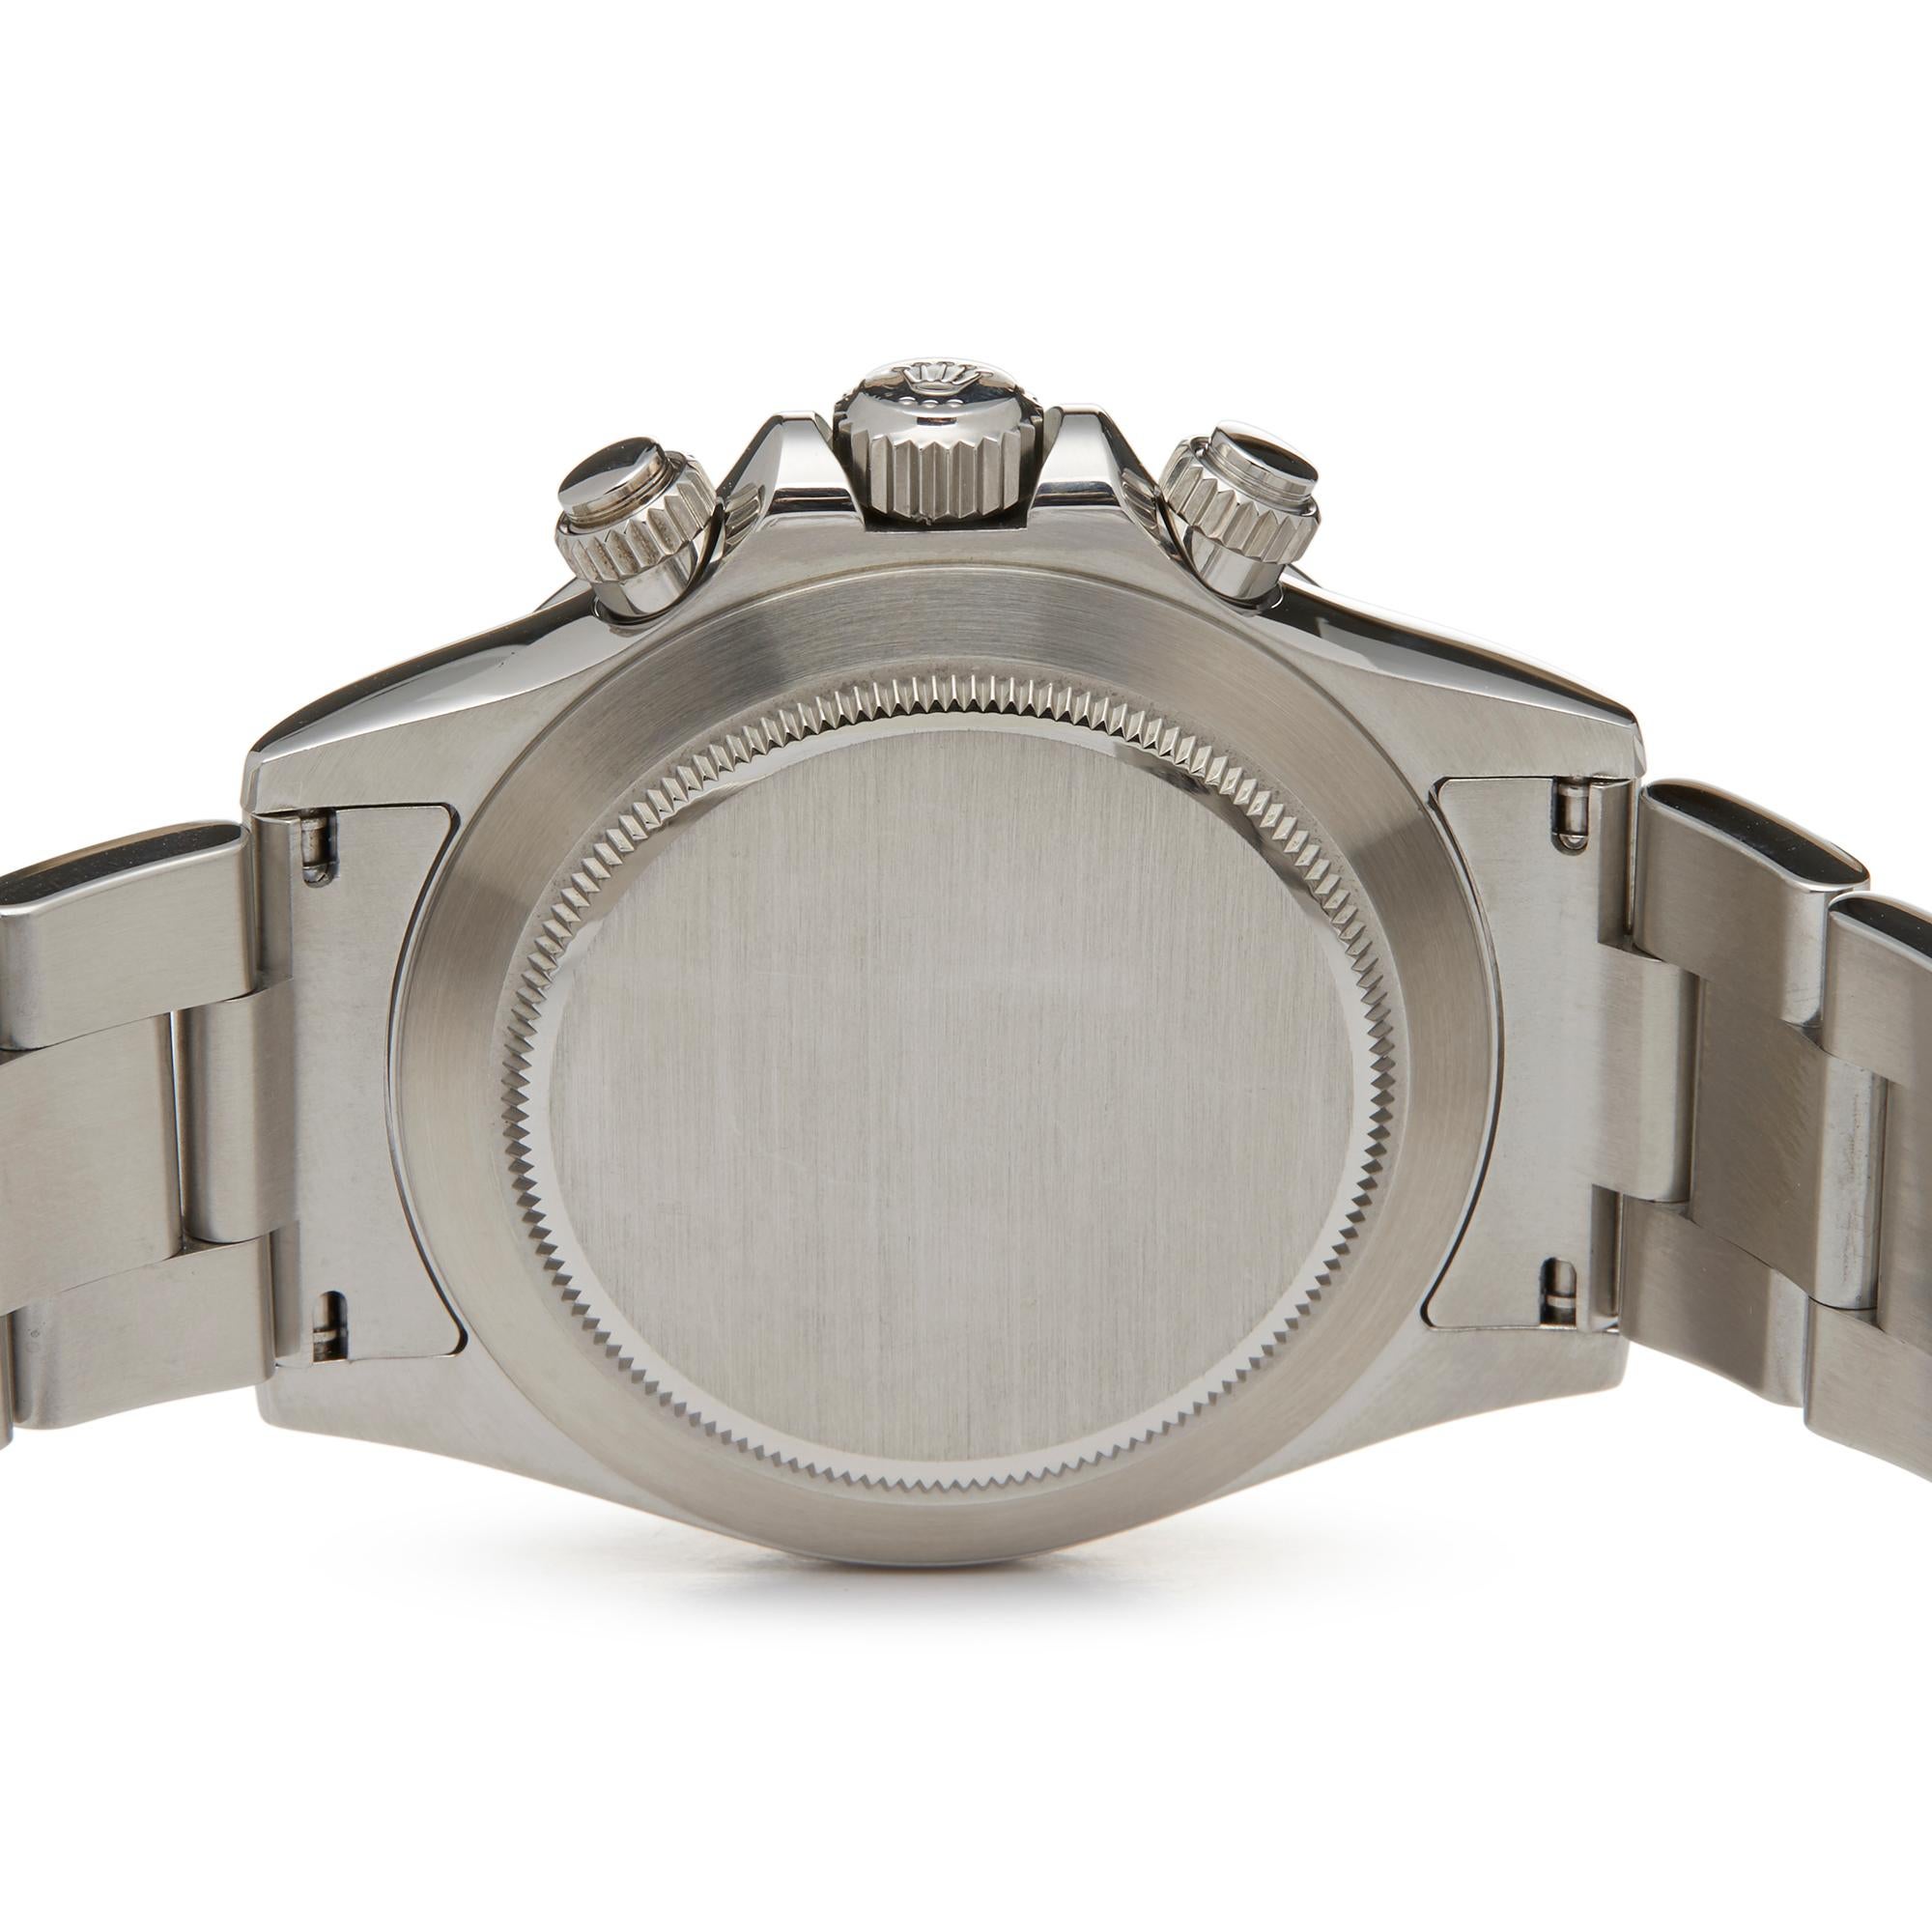 Rolex Daytona Stainless Steel 116520 Wristwatch 2